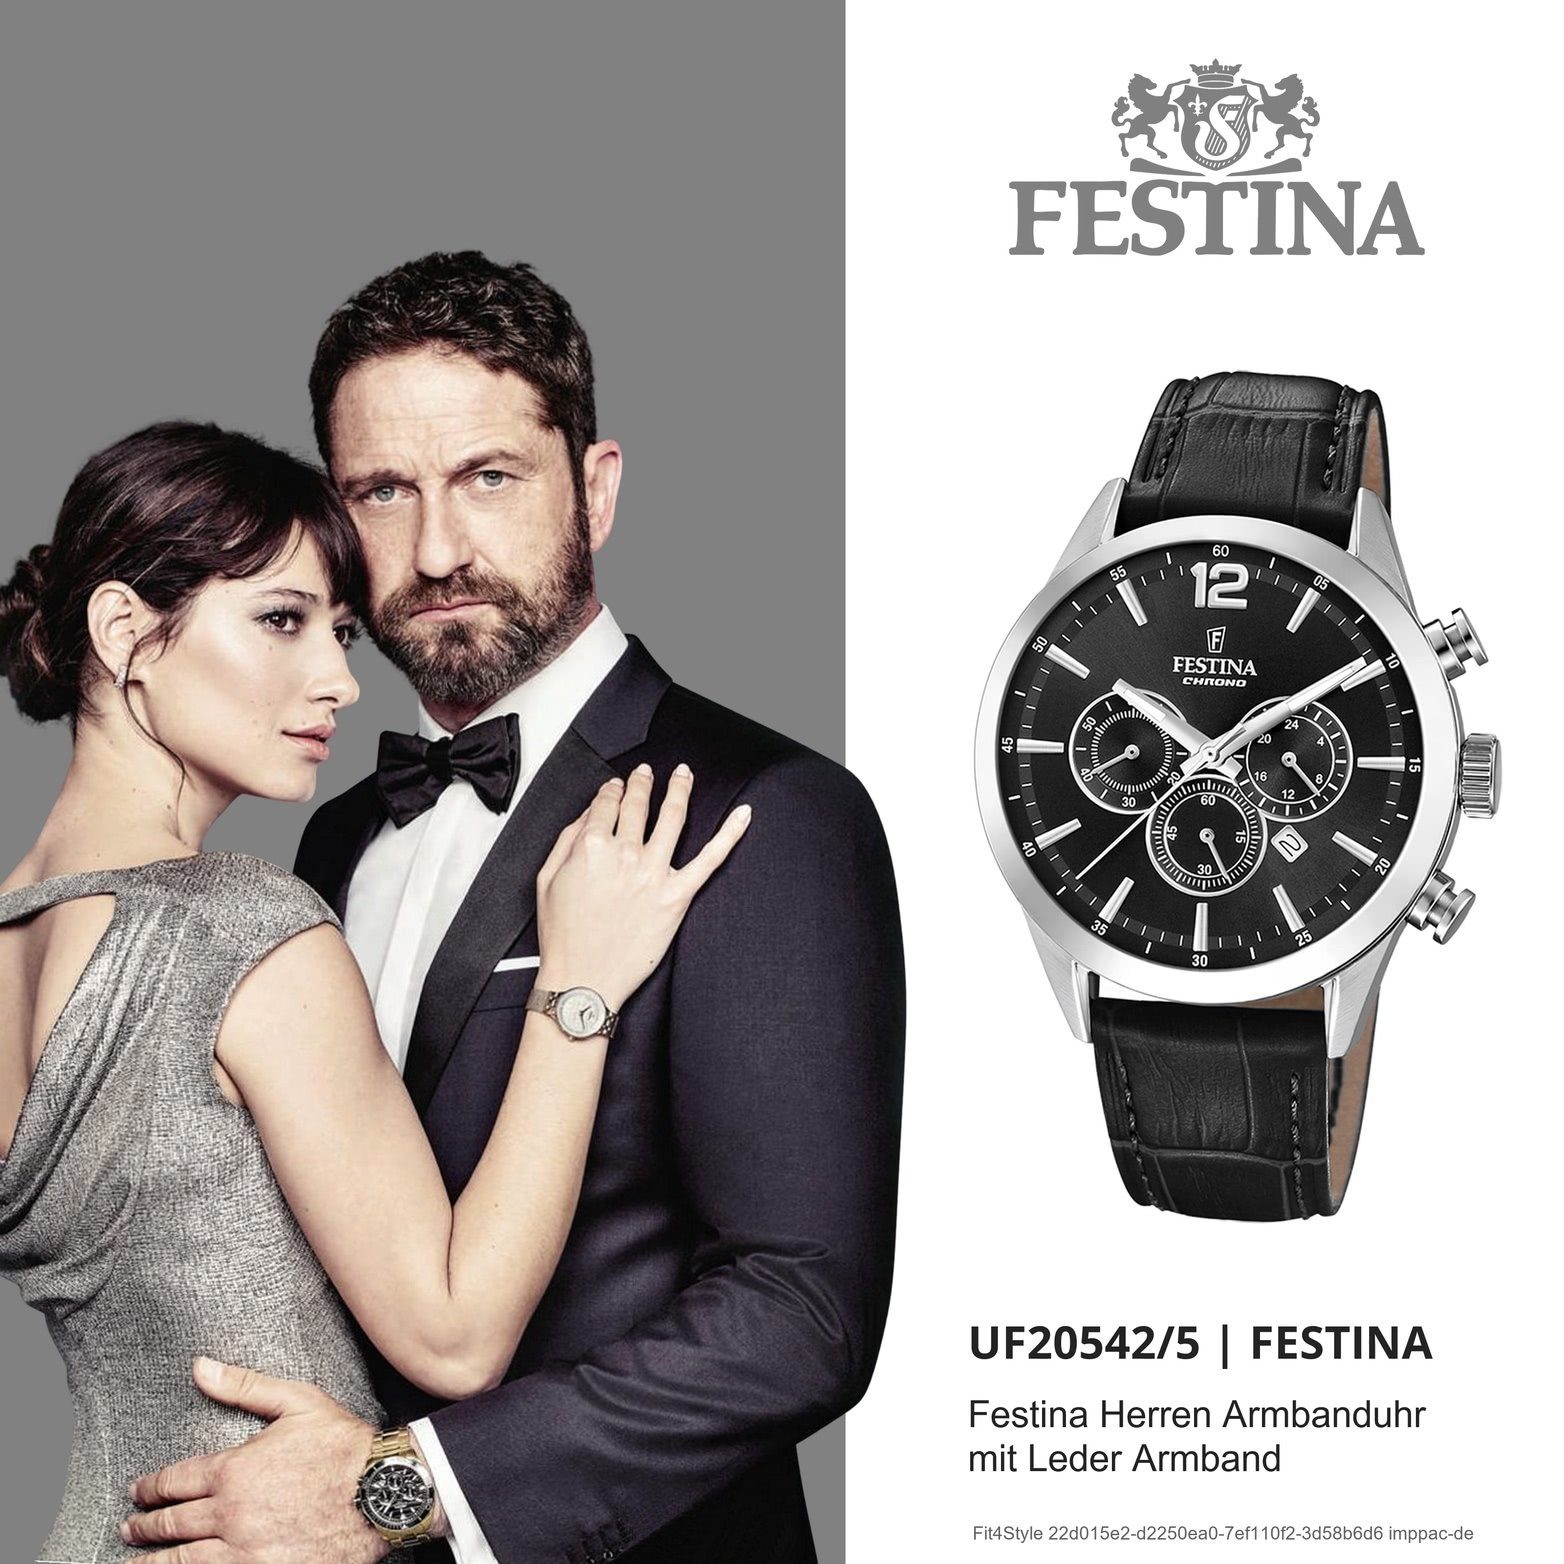 Festina Chronograph Herren (ca. Lederarmband, Gehäuse, Herrenuhr rundes Fashion-S mit Festina groß F20542/5, Leder 44mm), Uhr